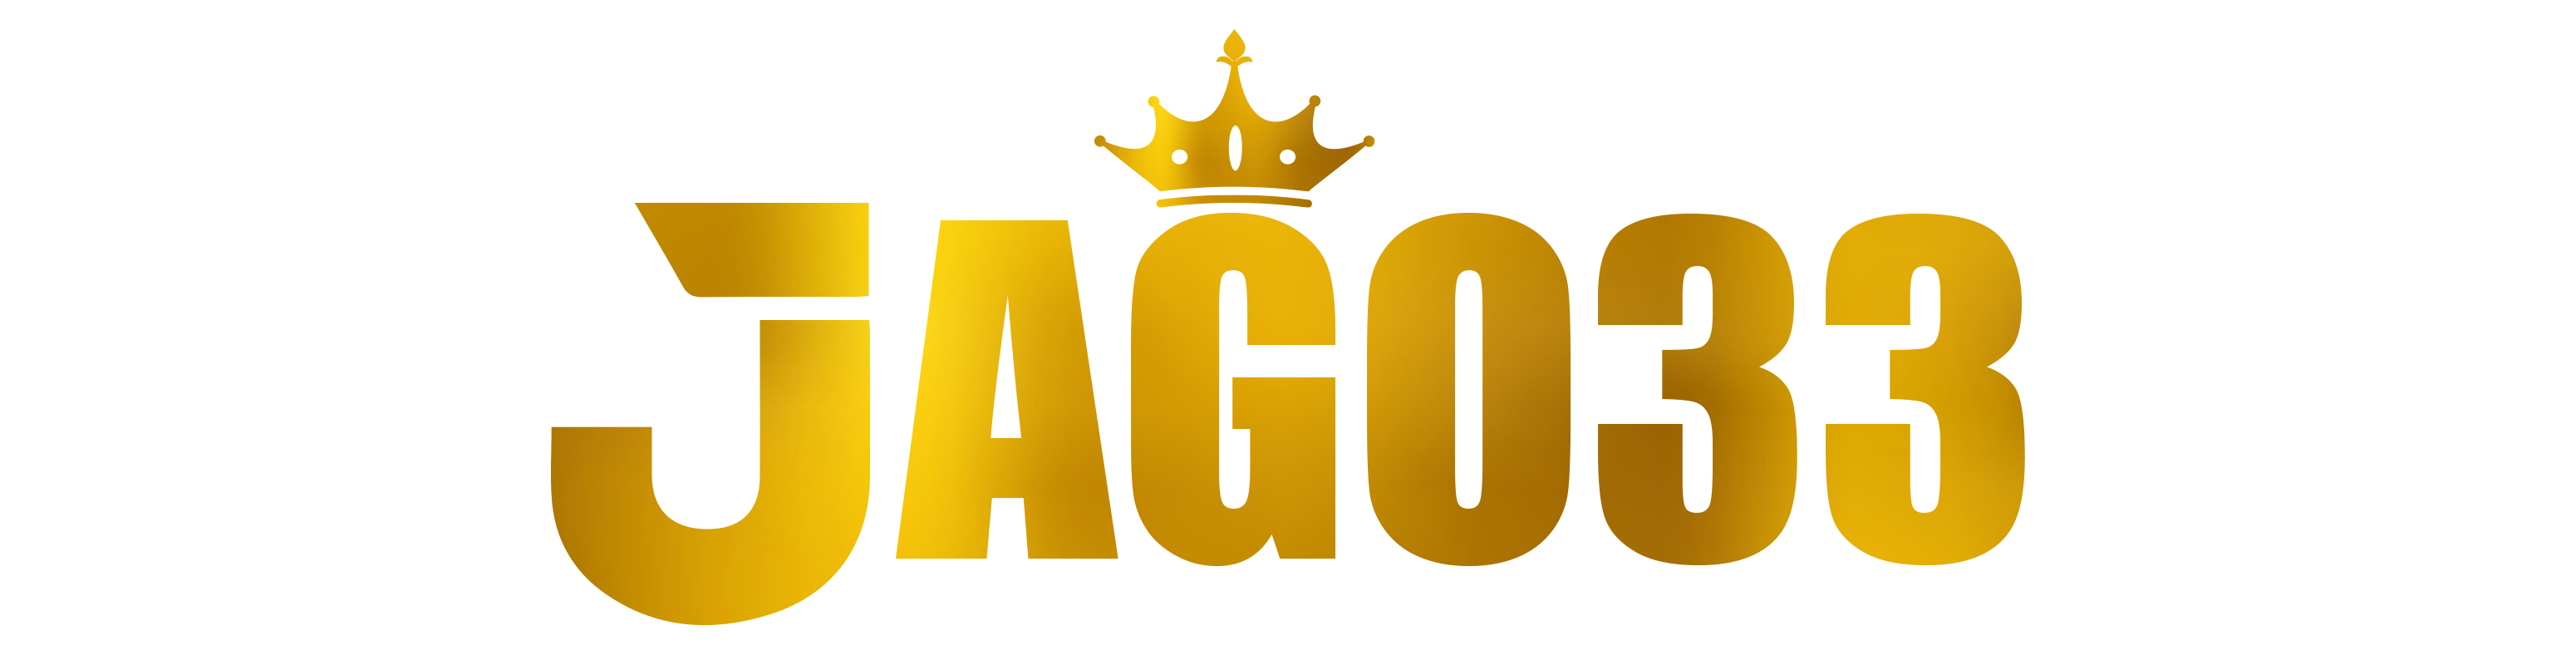 jago33